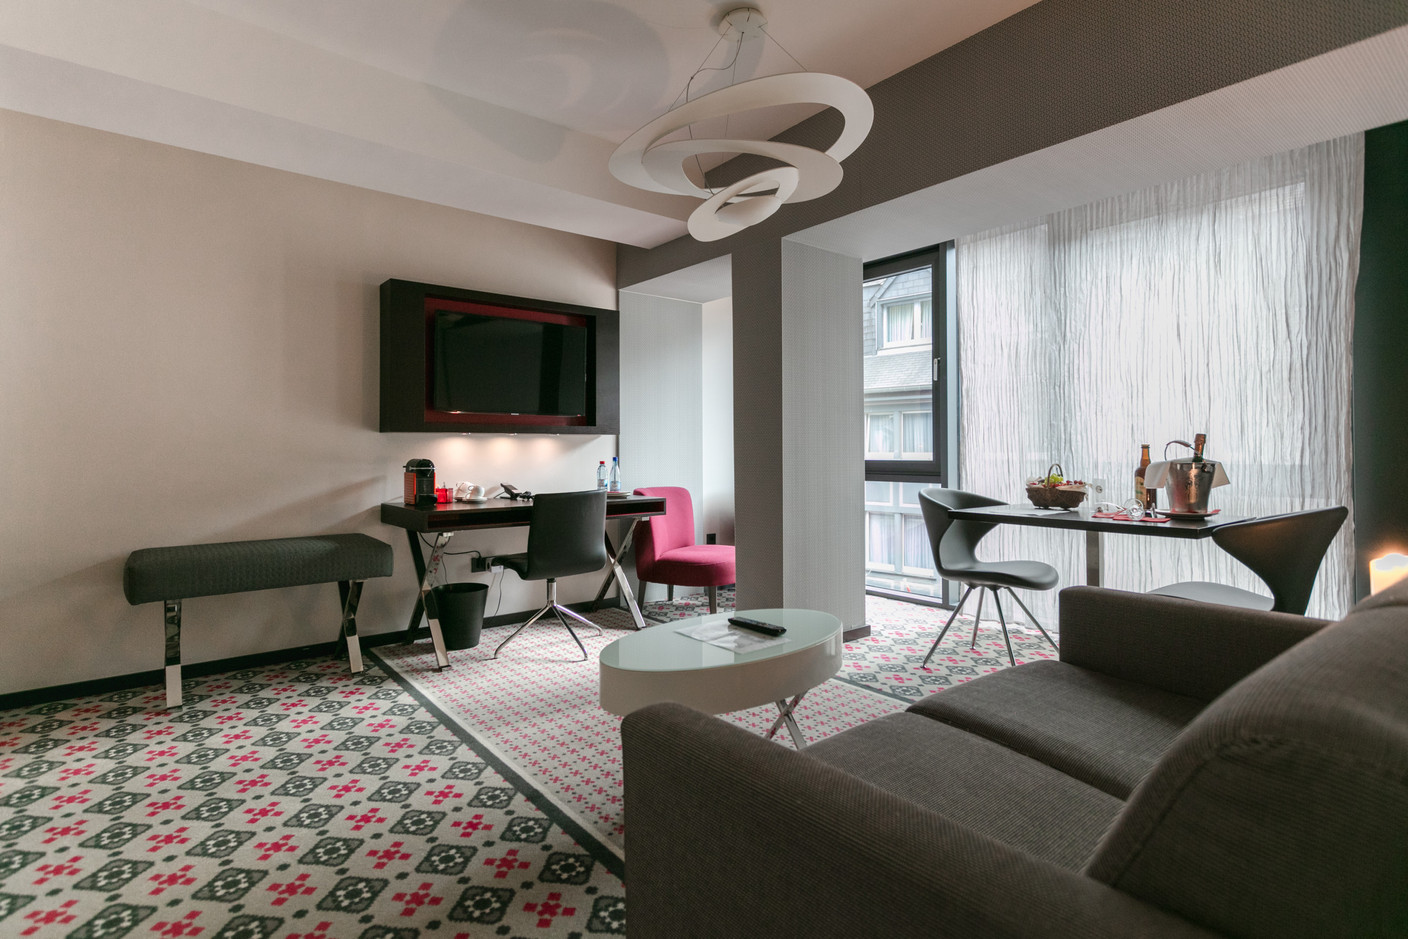 Le Clervaux Boutique & Design Hotel mise sur de très belles suites, aussi confortables que modernes. (Photo: Romain Gamba/Maison Moderne)